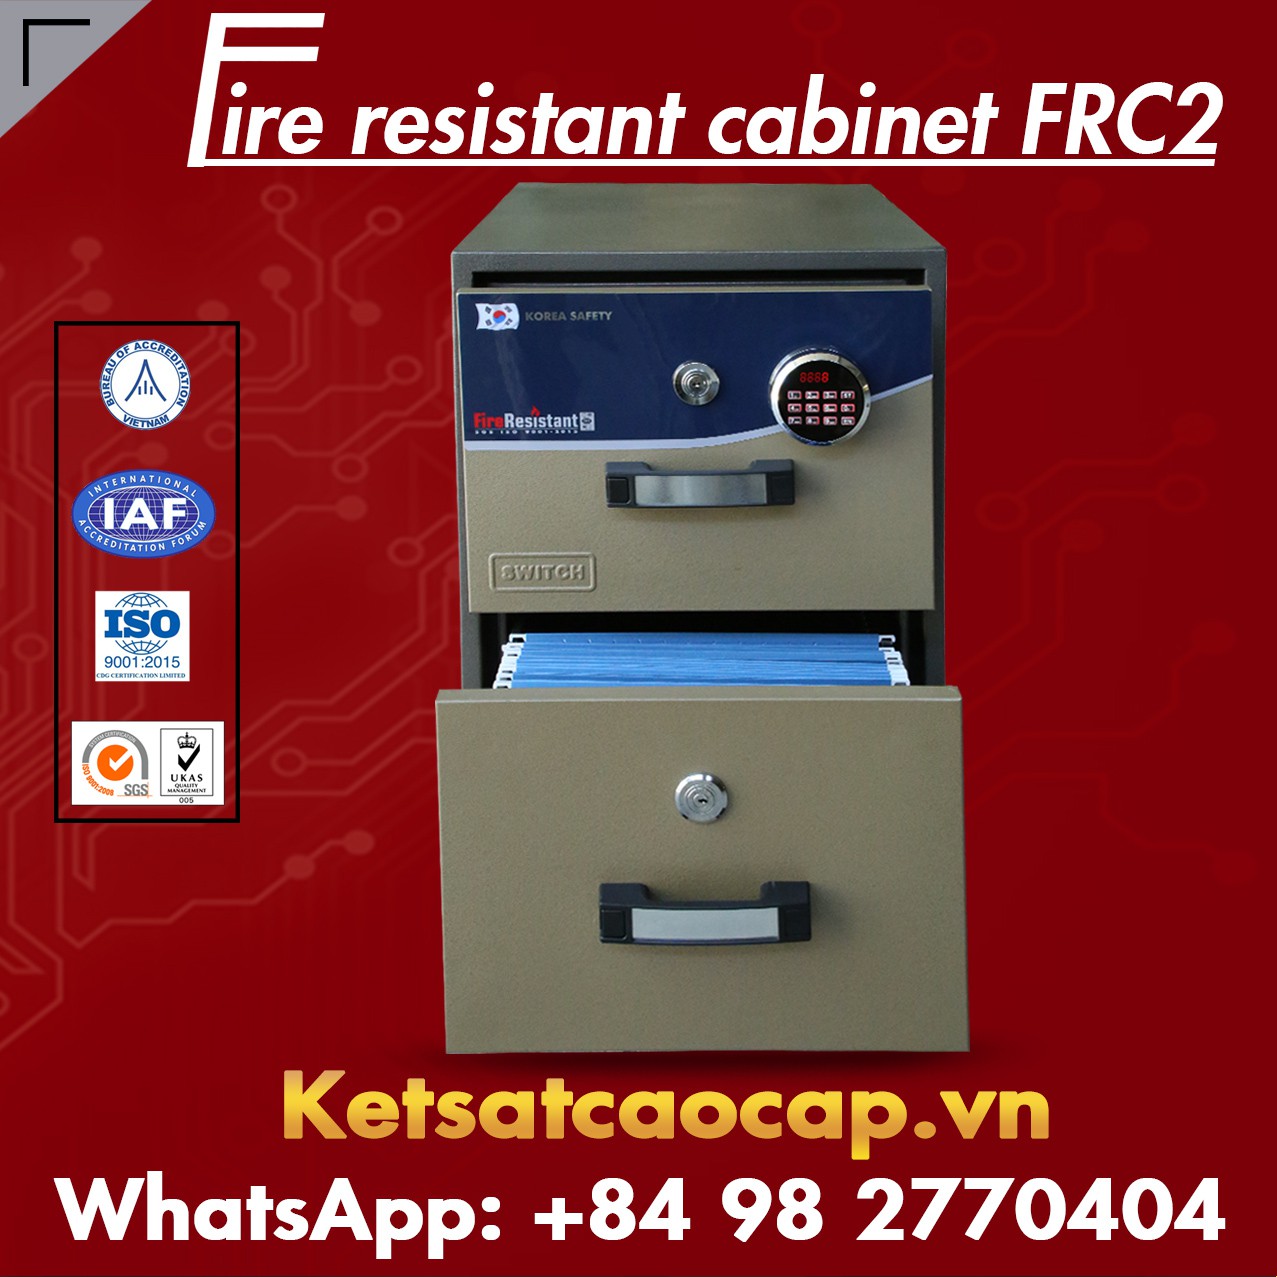 Tìm Nguồn Hàng Tủ Sắt Chống Cháy WELKO FRC2